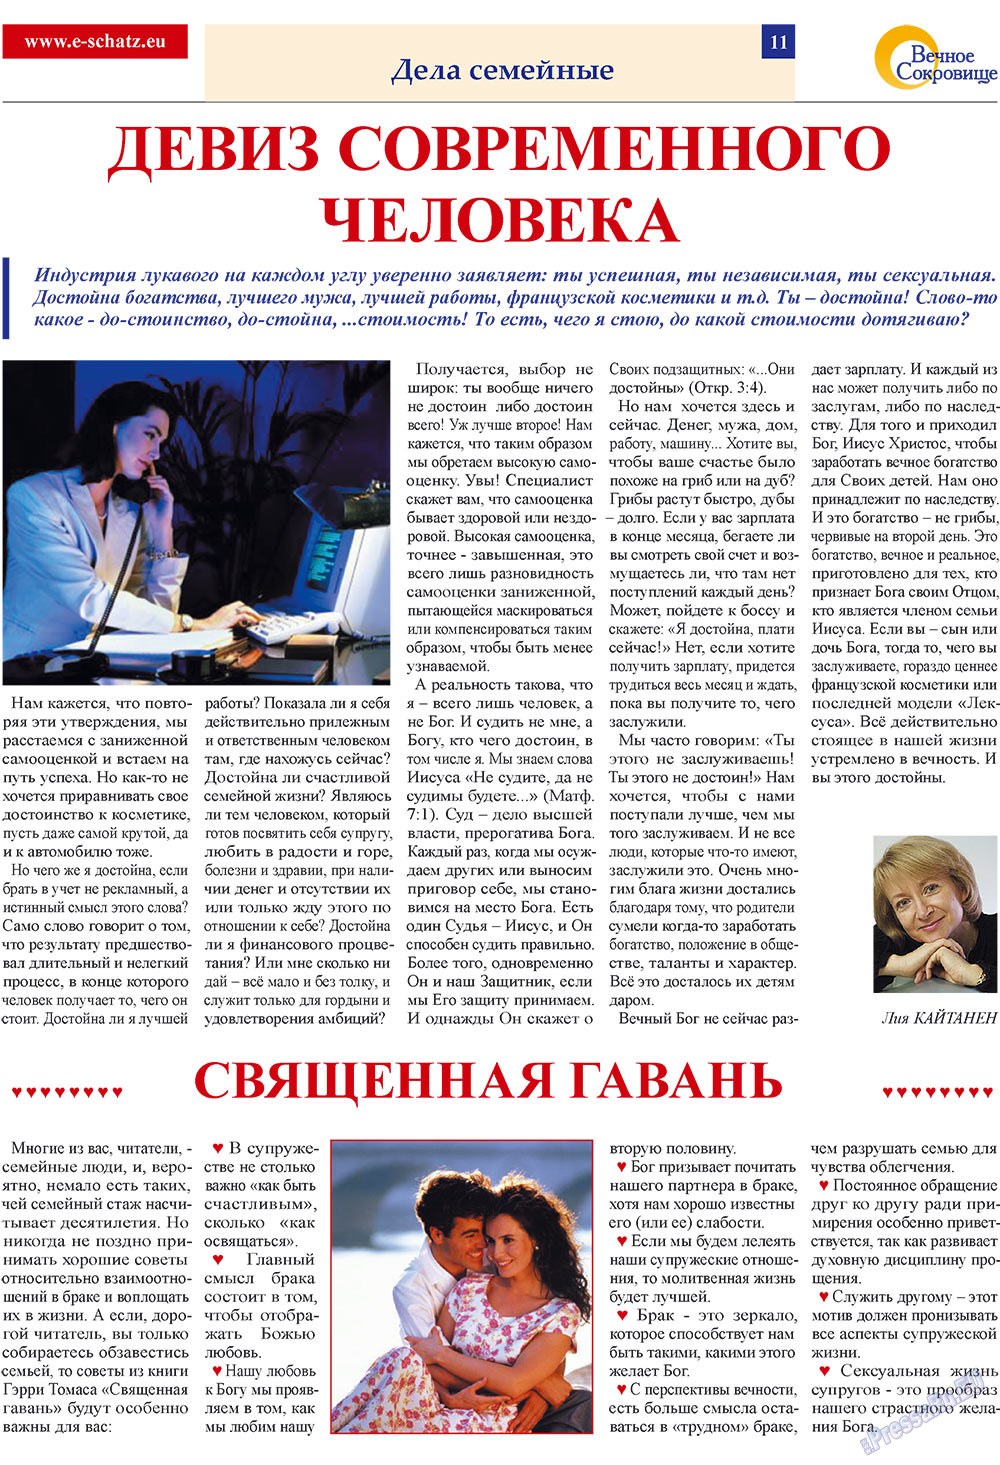 Вечное сокровище (газета). 2009 год, номер 1, стр. 11